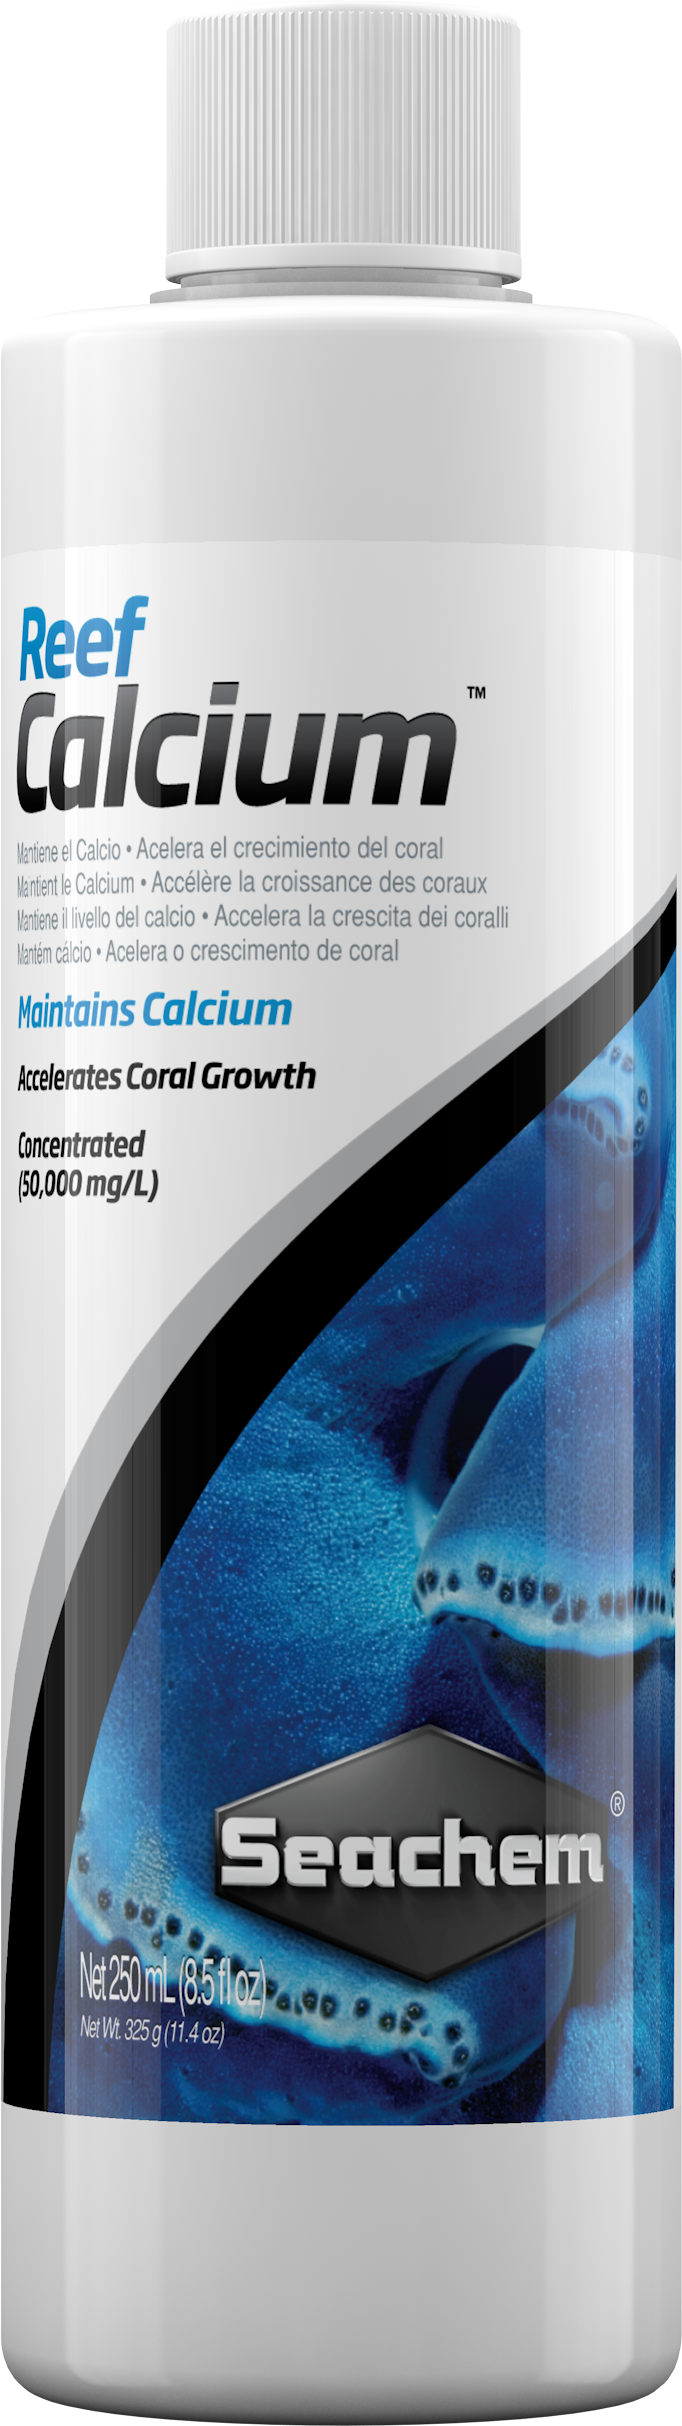 Seachem Reef Calcium 250ml - Petsgool Online